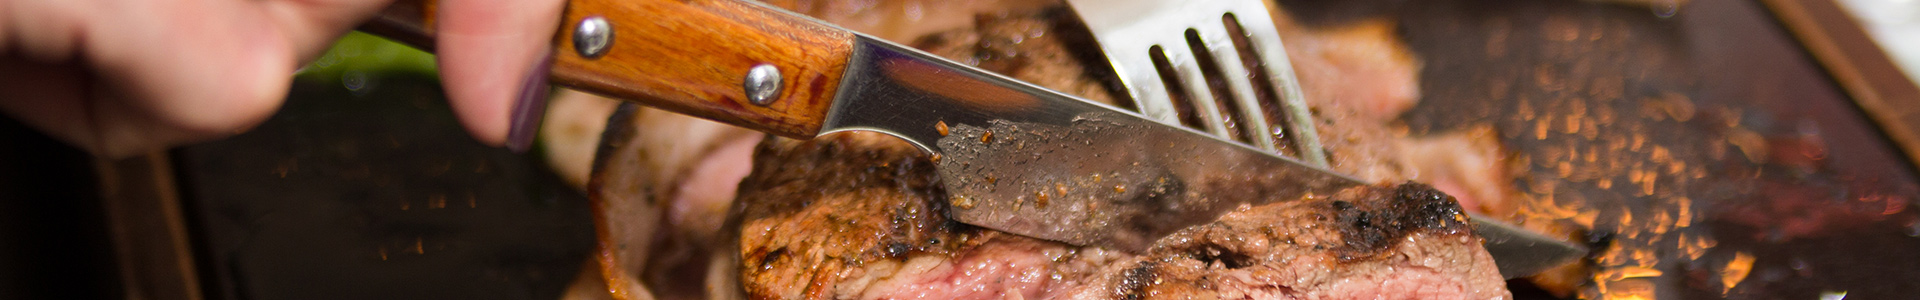 Steak-Messer